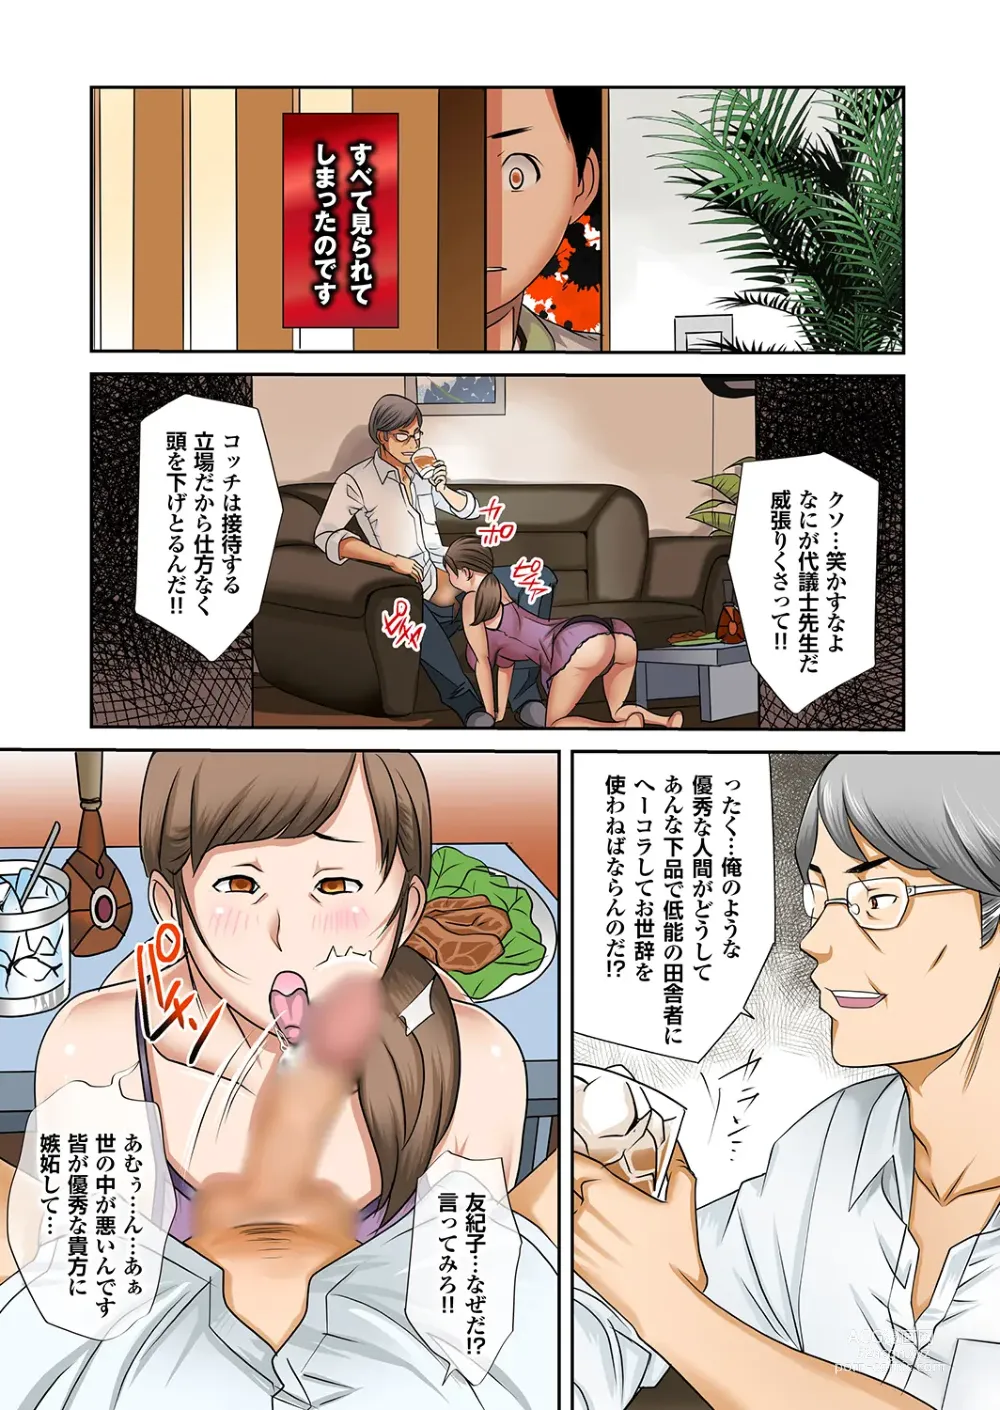 Page 9 of manga Boku no Kaa-san no Nikudorei-ka ga Tomaranai.